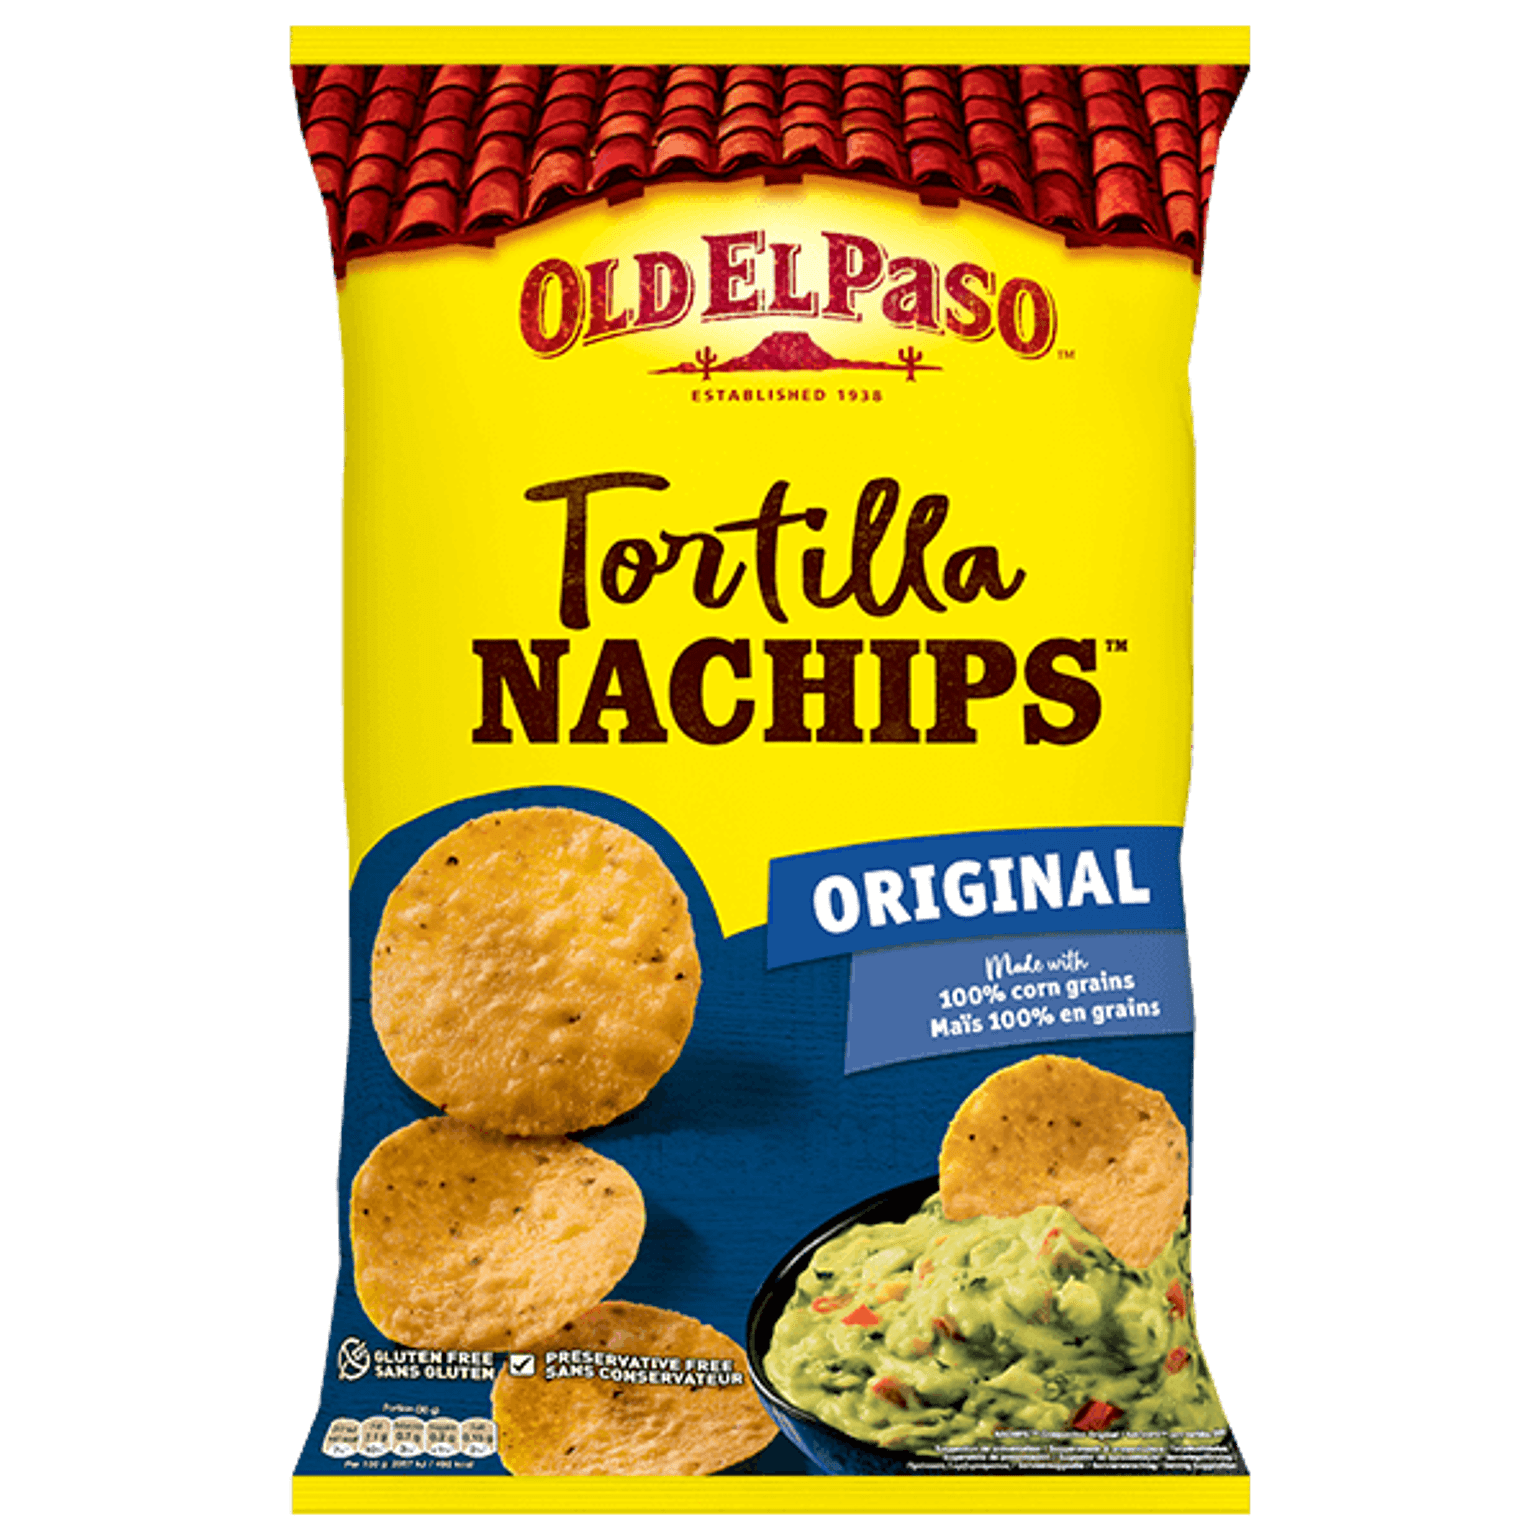 pack of Old El Paso's original nachips (185g)